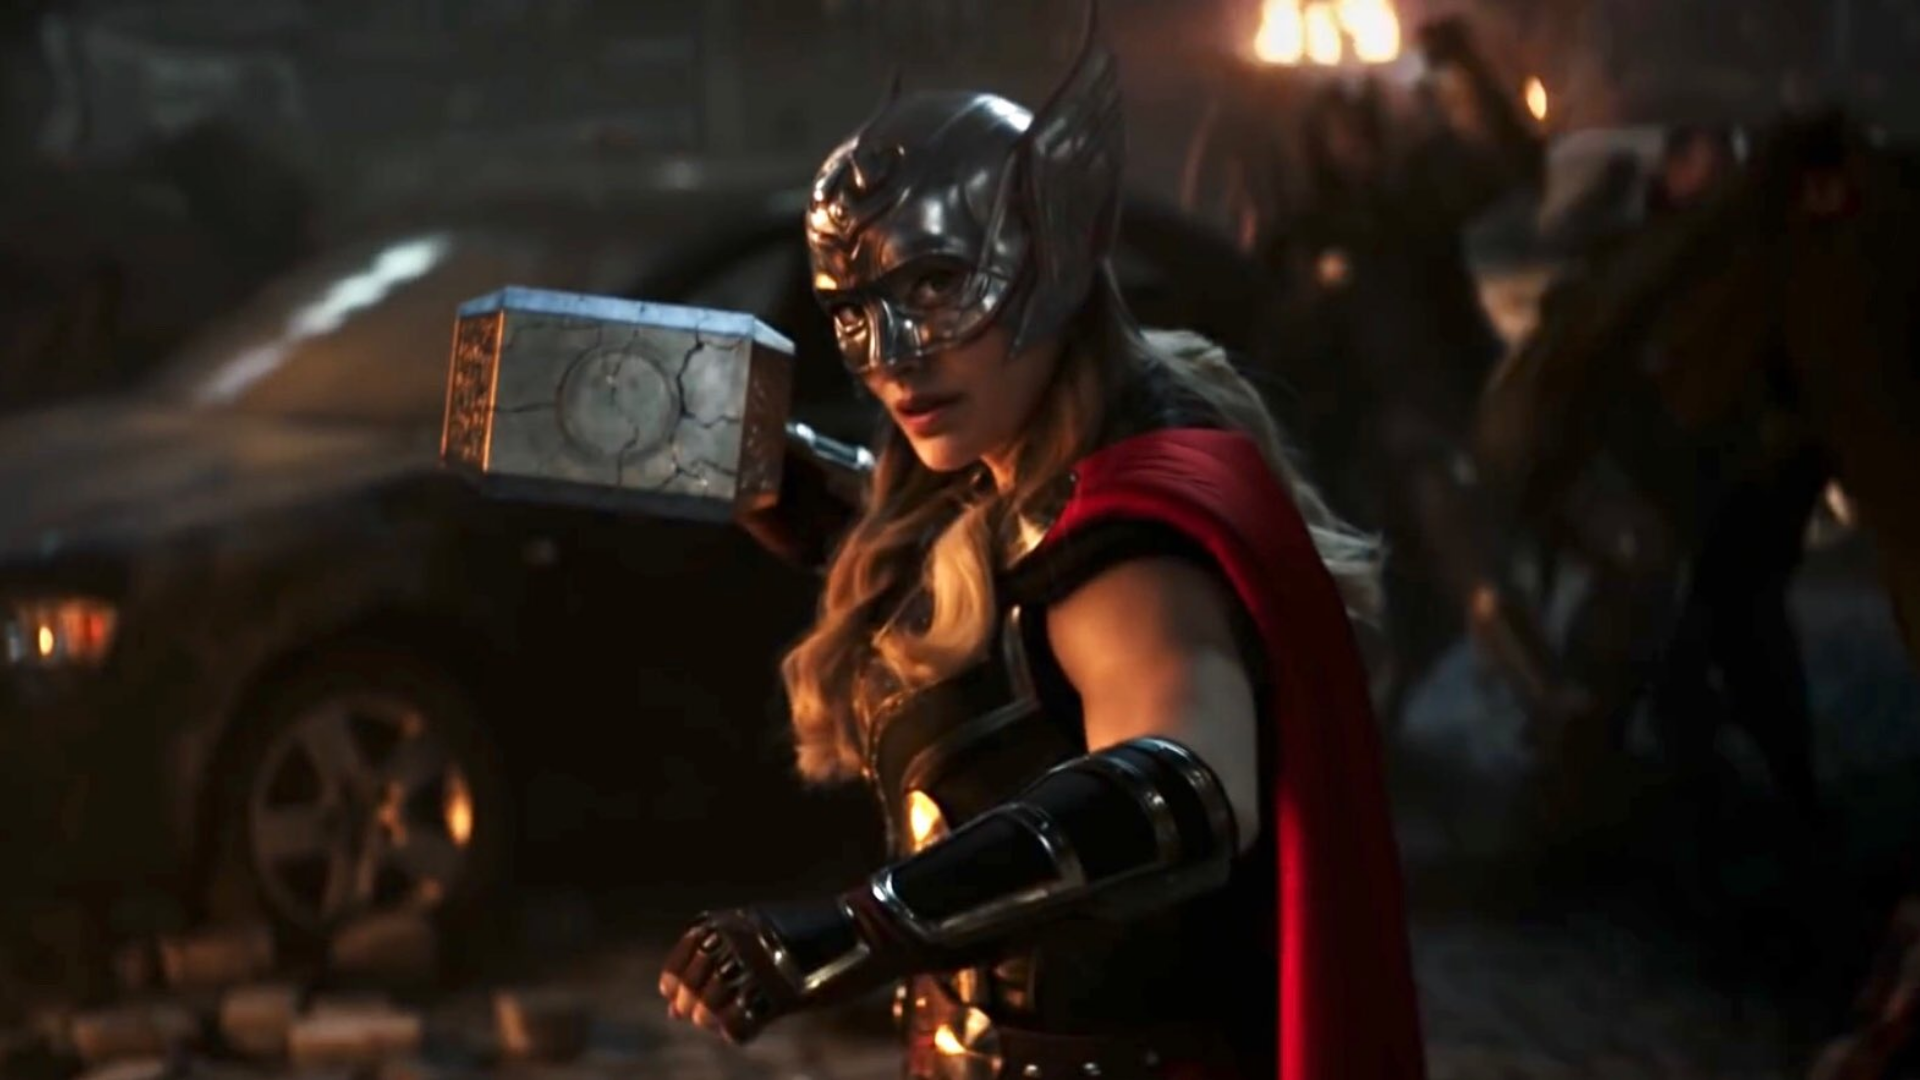 Thor: Amor e Trovão - Todas as referências e easter-eggs do filme